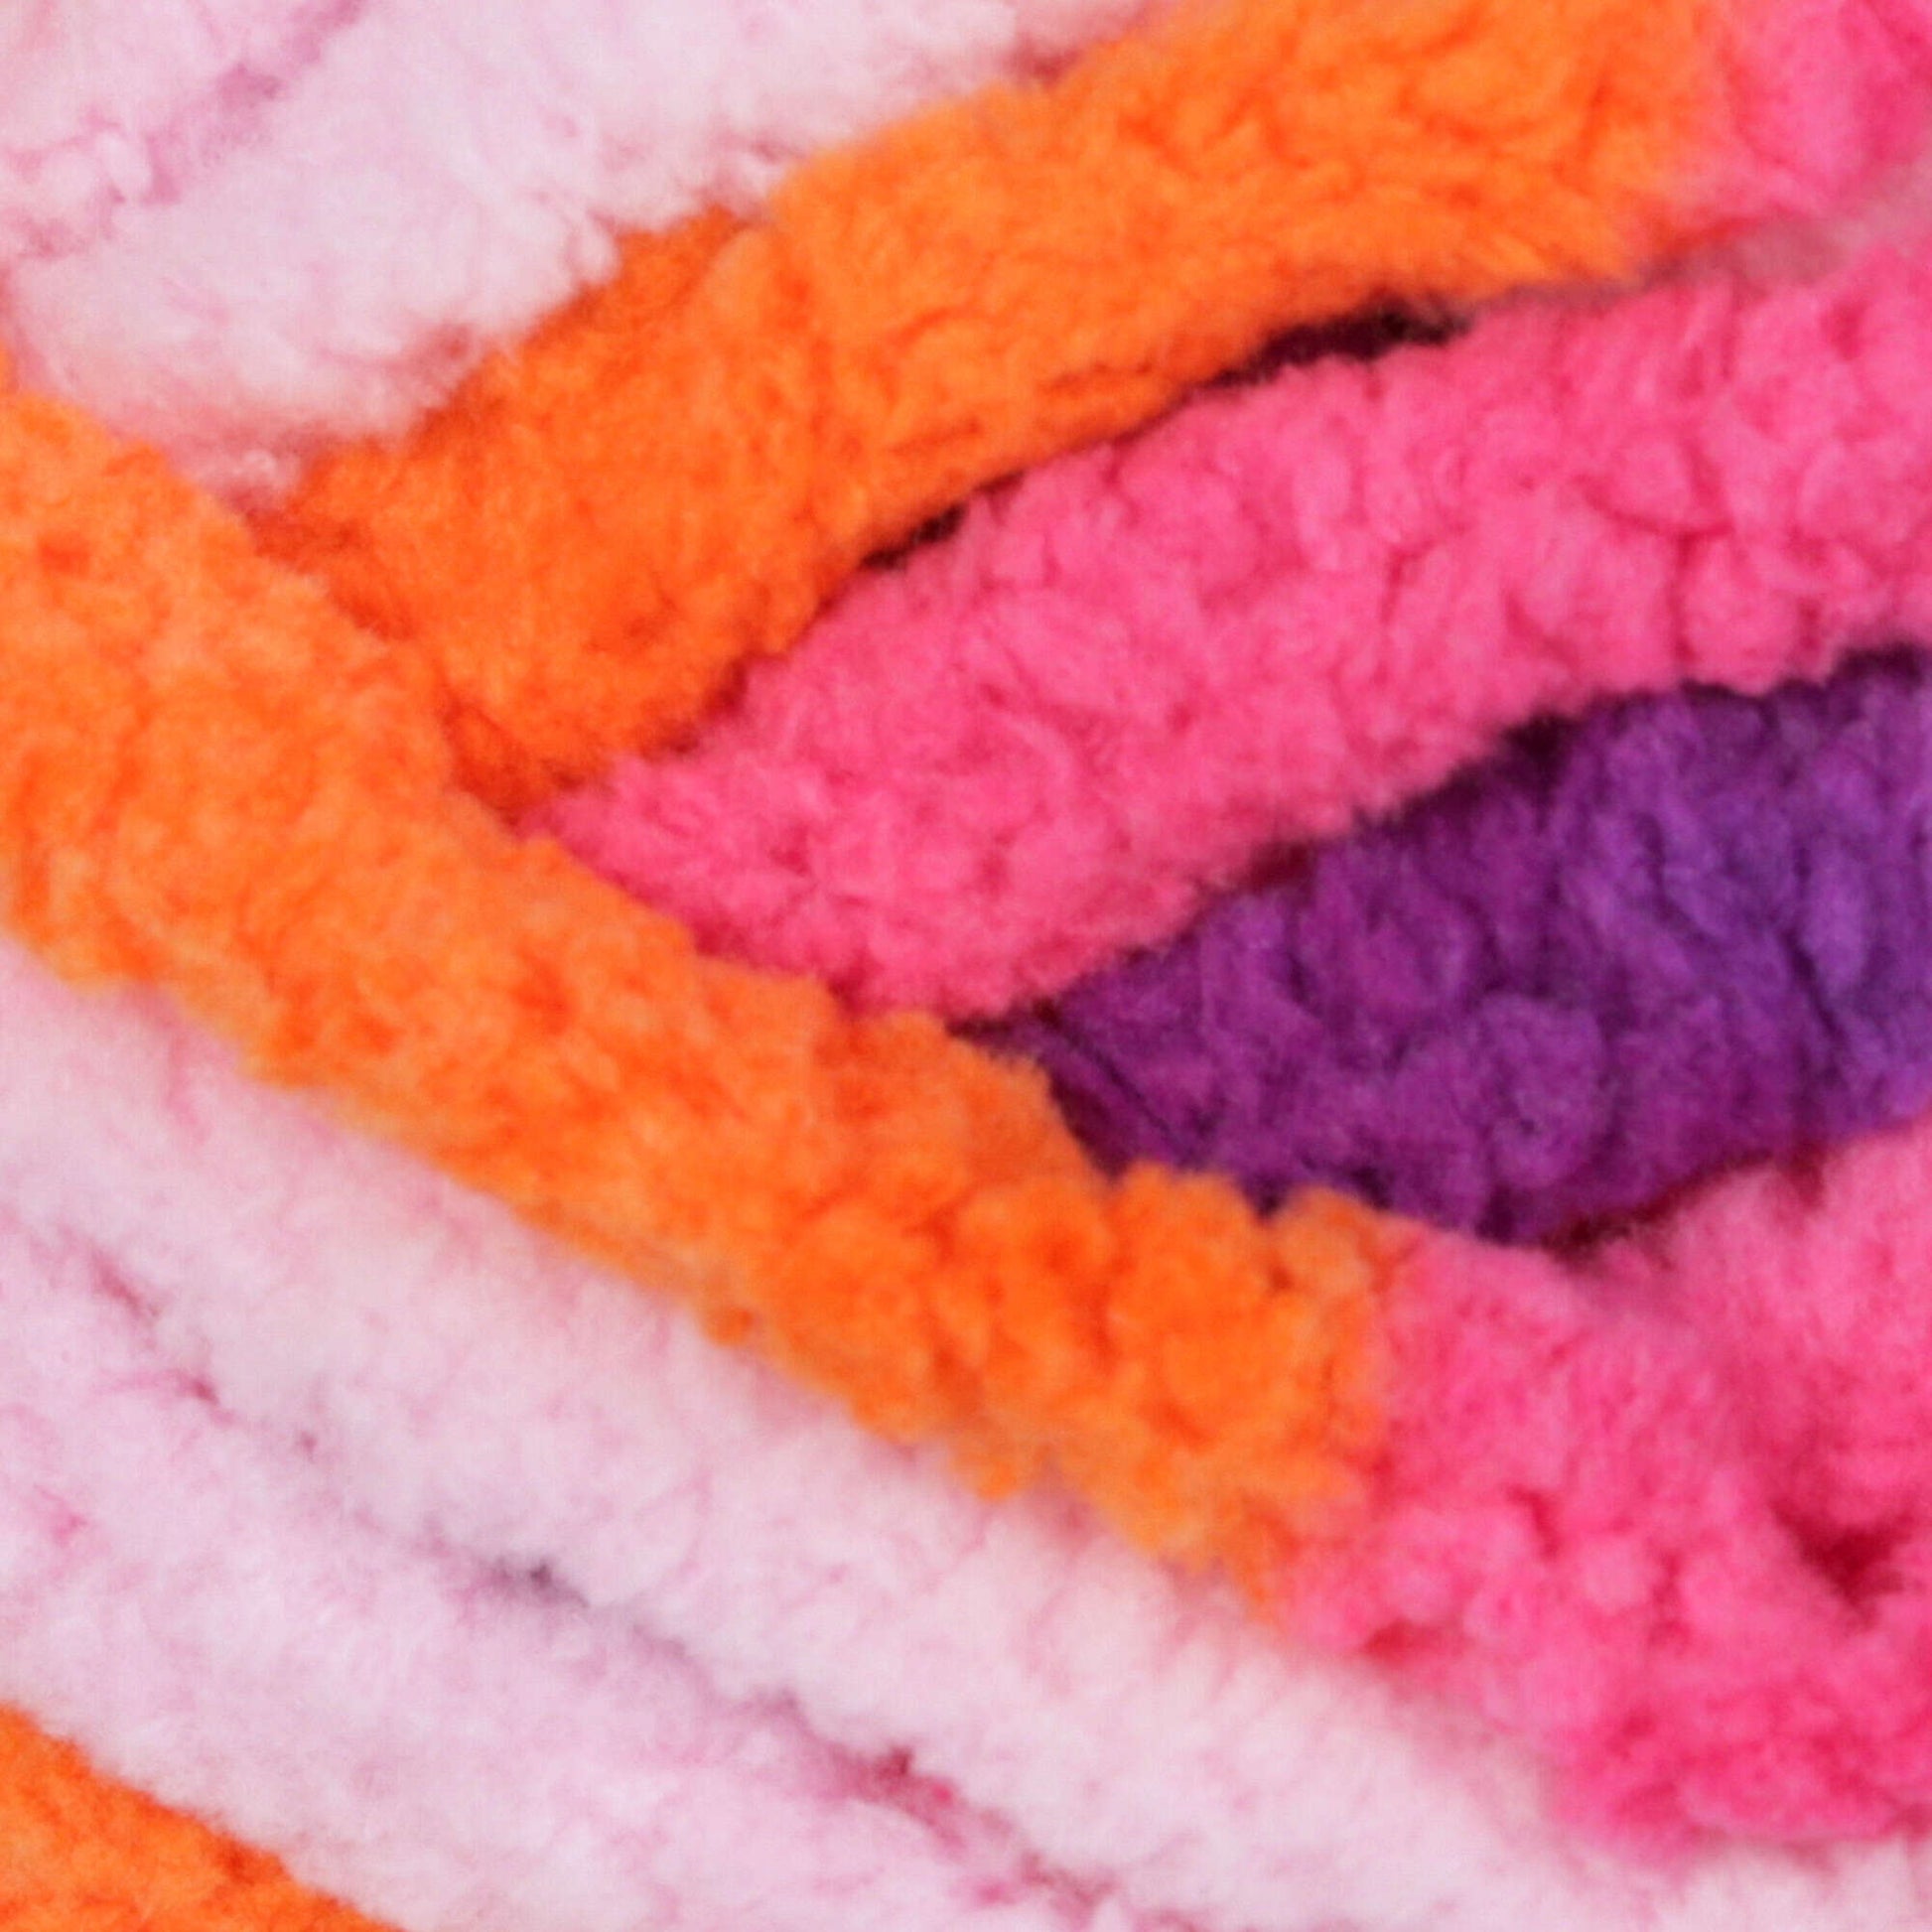 Bernat Blanket Brights Yarn - Discontinued Shades